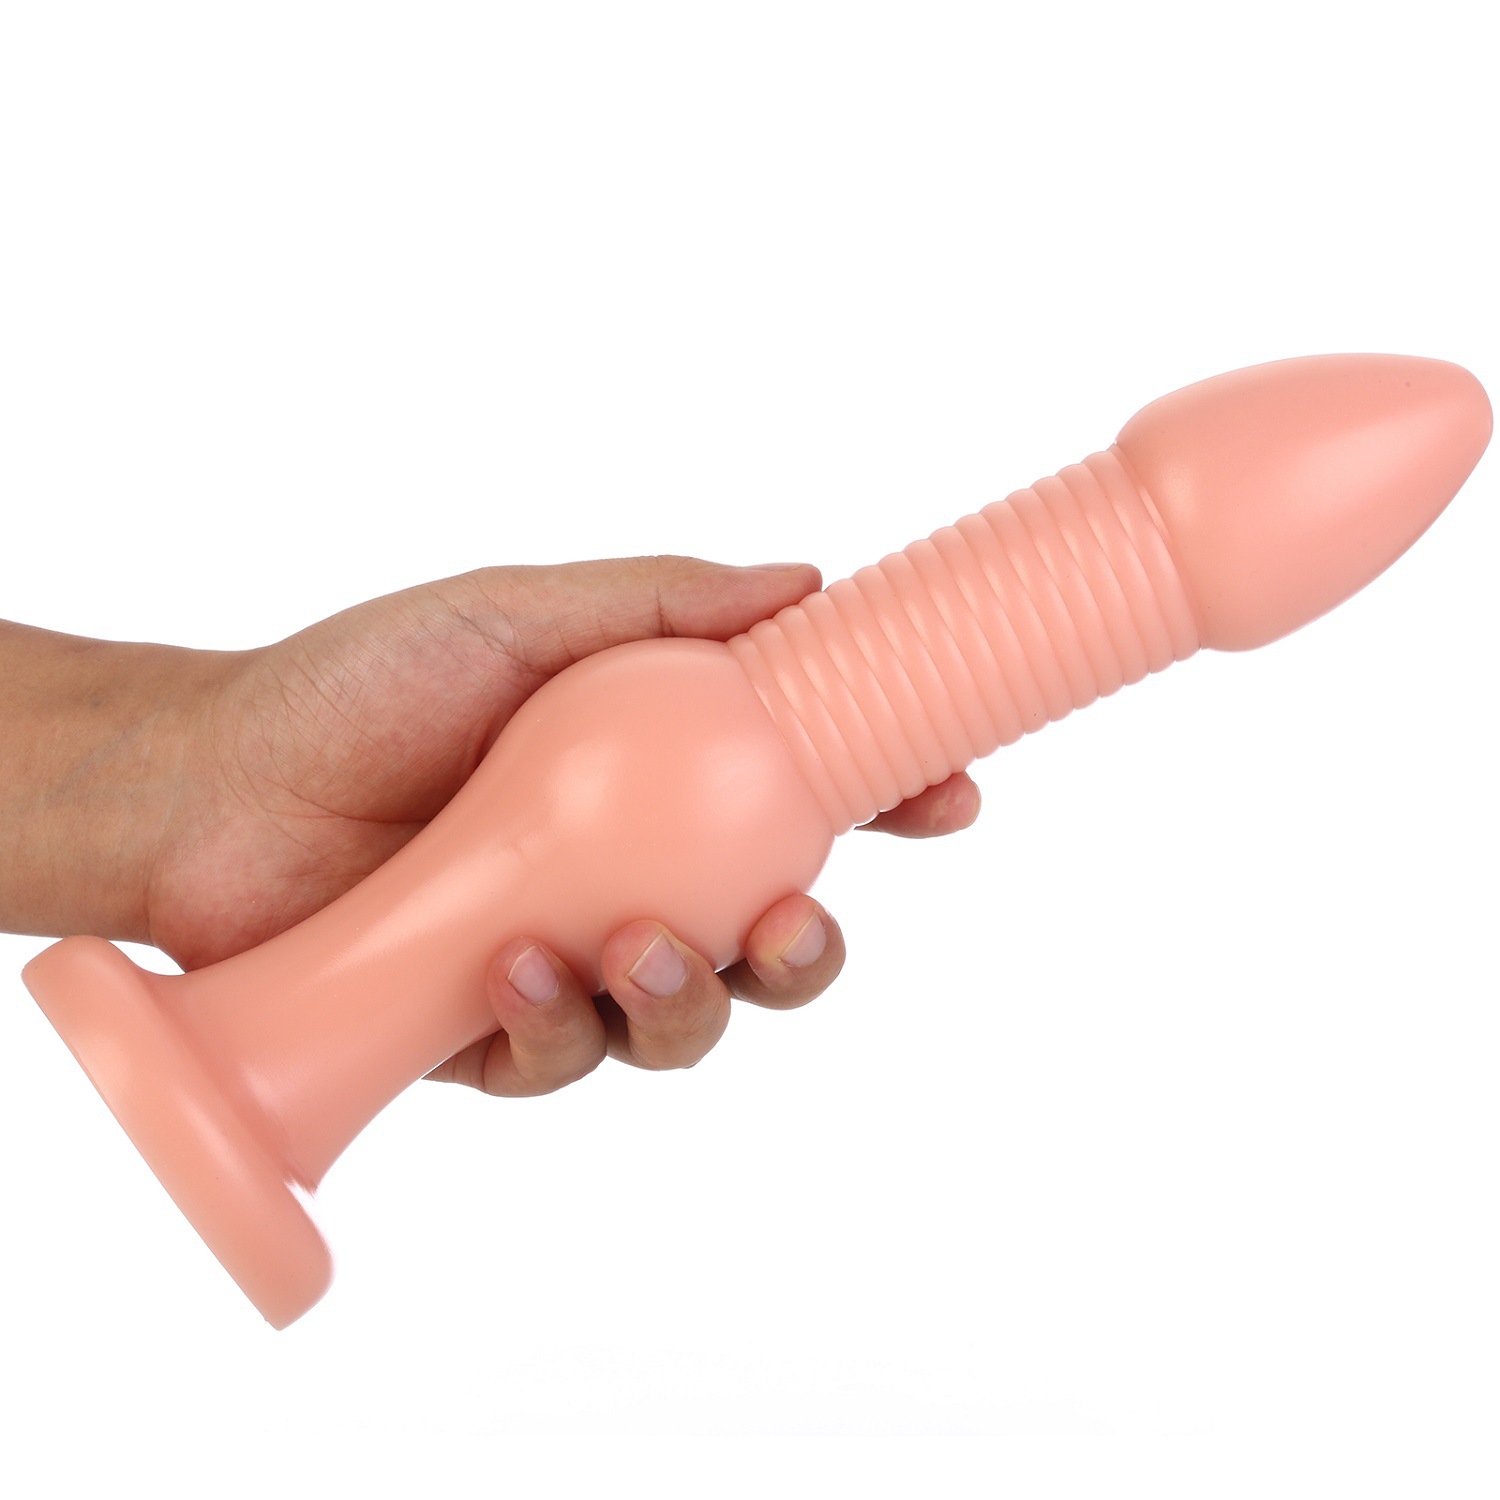 Grande pagode anal butt plug anal massagem vaginal anus vaginal expansor anal plug com ventosa adulto sm sexo brinquedos para mulheres